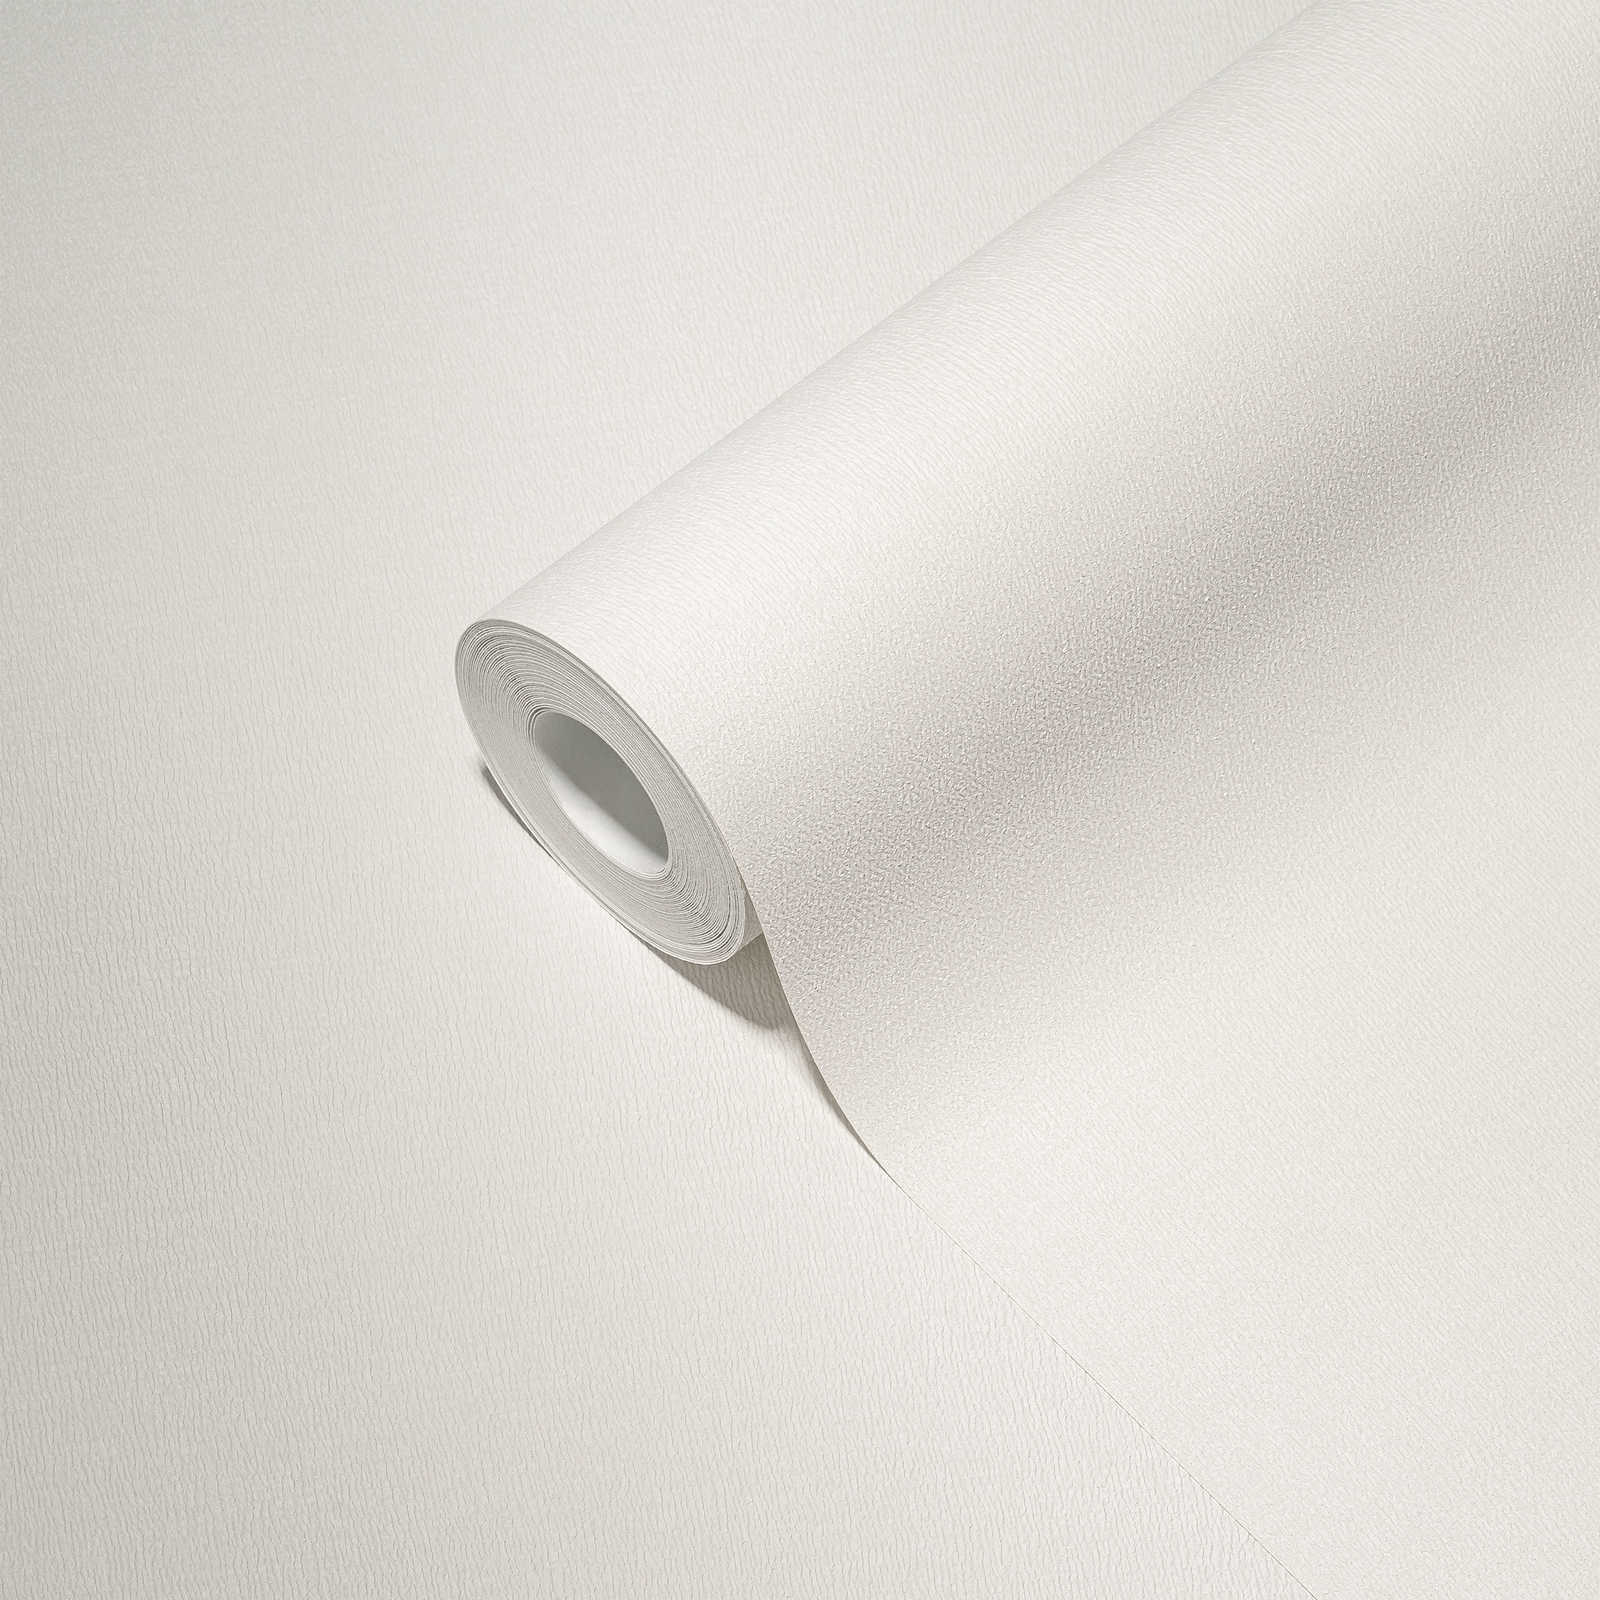             Non-woven wallpaper monochrome in light shades - white
        